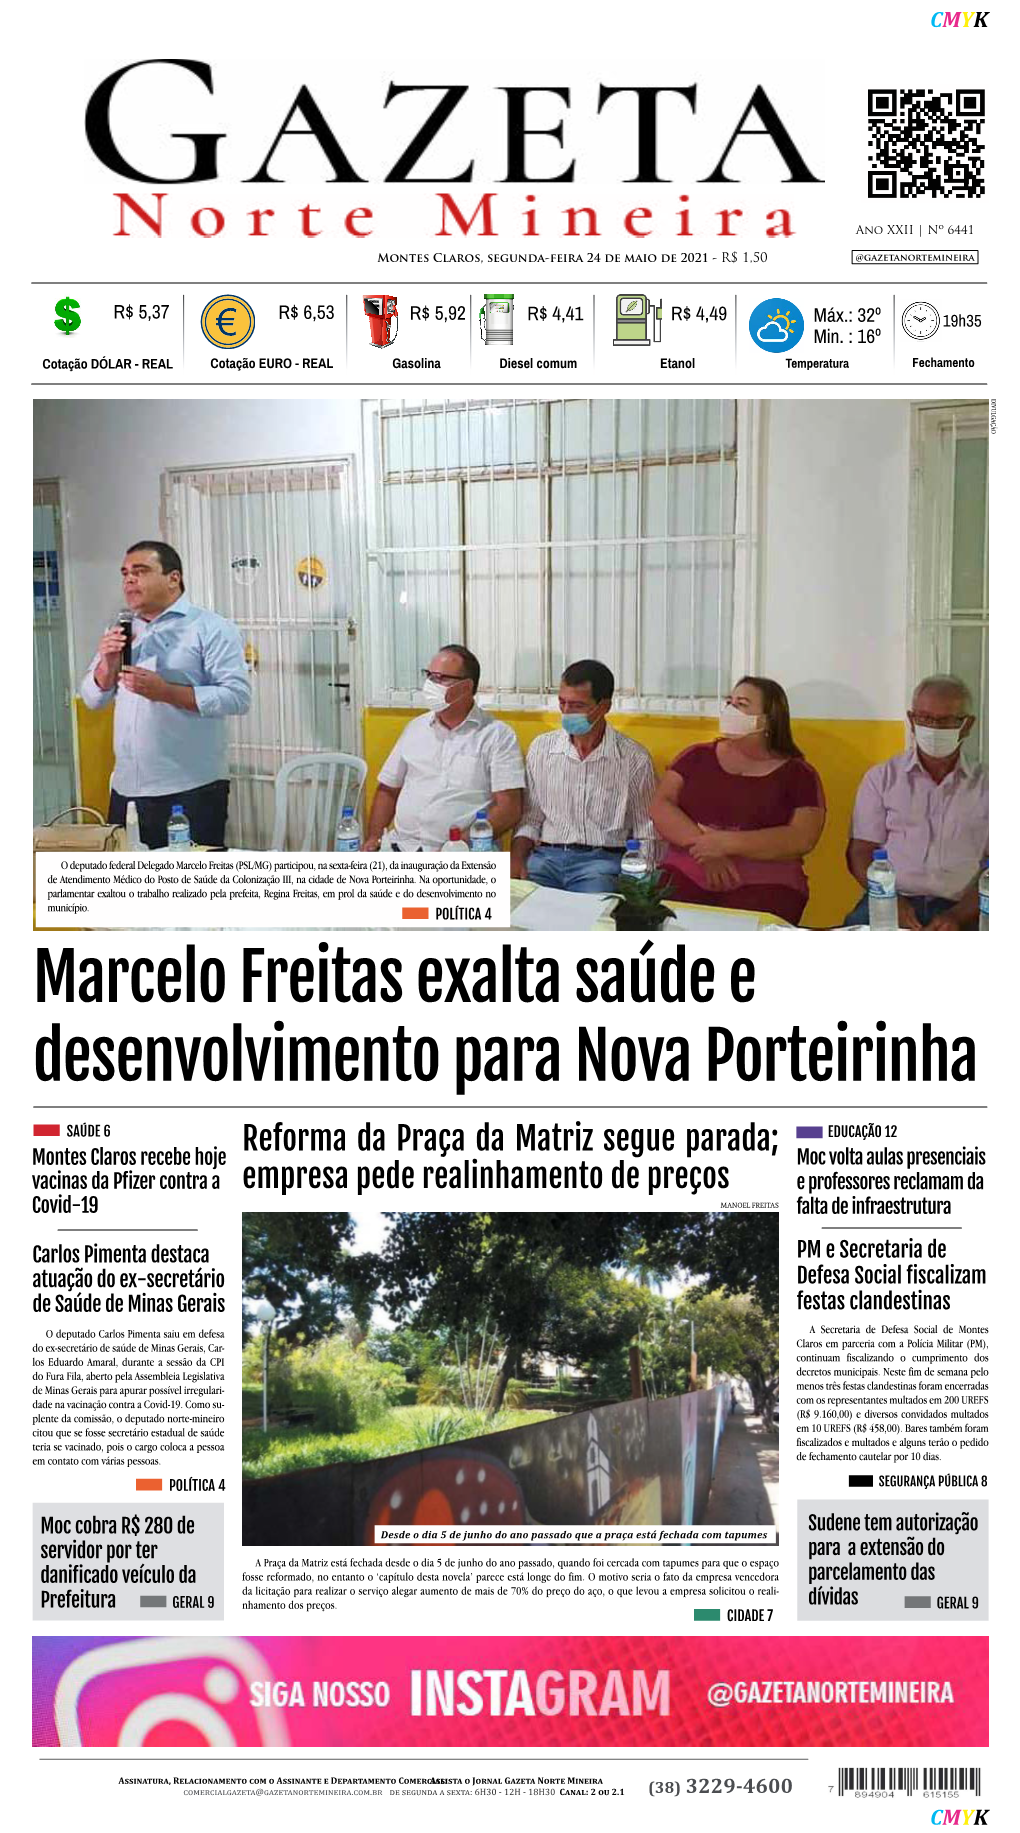 Marcelo Freitas Exalta Saúde E Desenvolvimento Para Nova Porteirinha